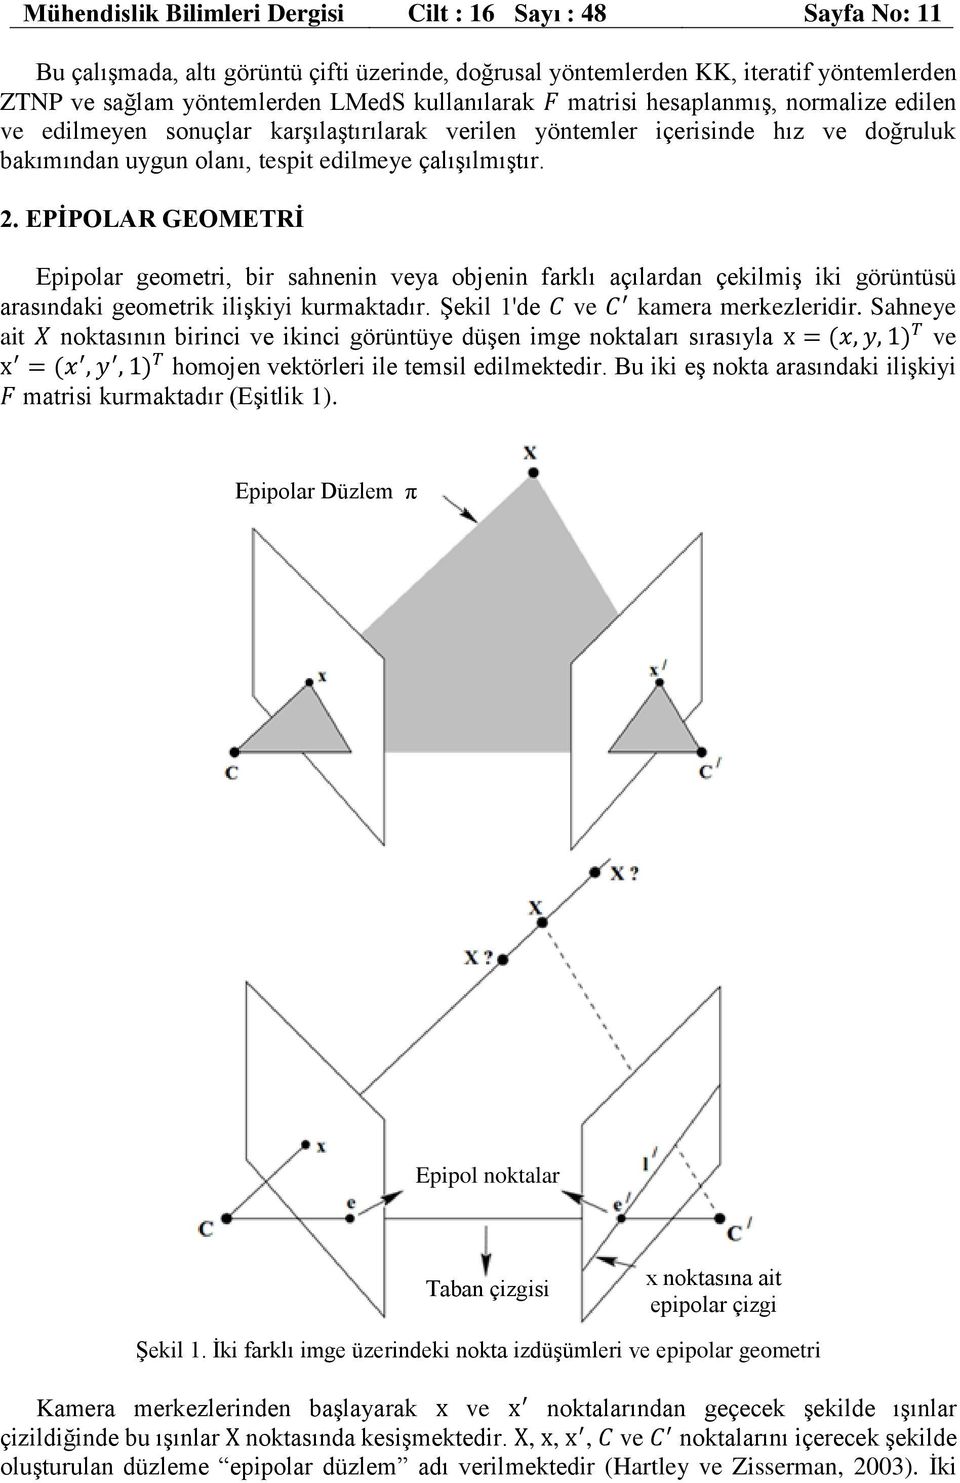 EPİPOLAR GEOMETRİ Epipolar geometri, bir sahnenin veya objenin farklı açılardan çekilmiş iki görüntüsü arasındaki geometrik ilişkiyi kurmaktadır. Şekil 1'de C ve C kamera merkezleridir.